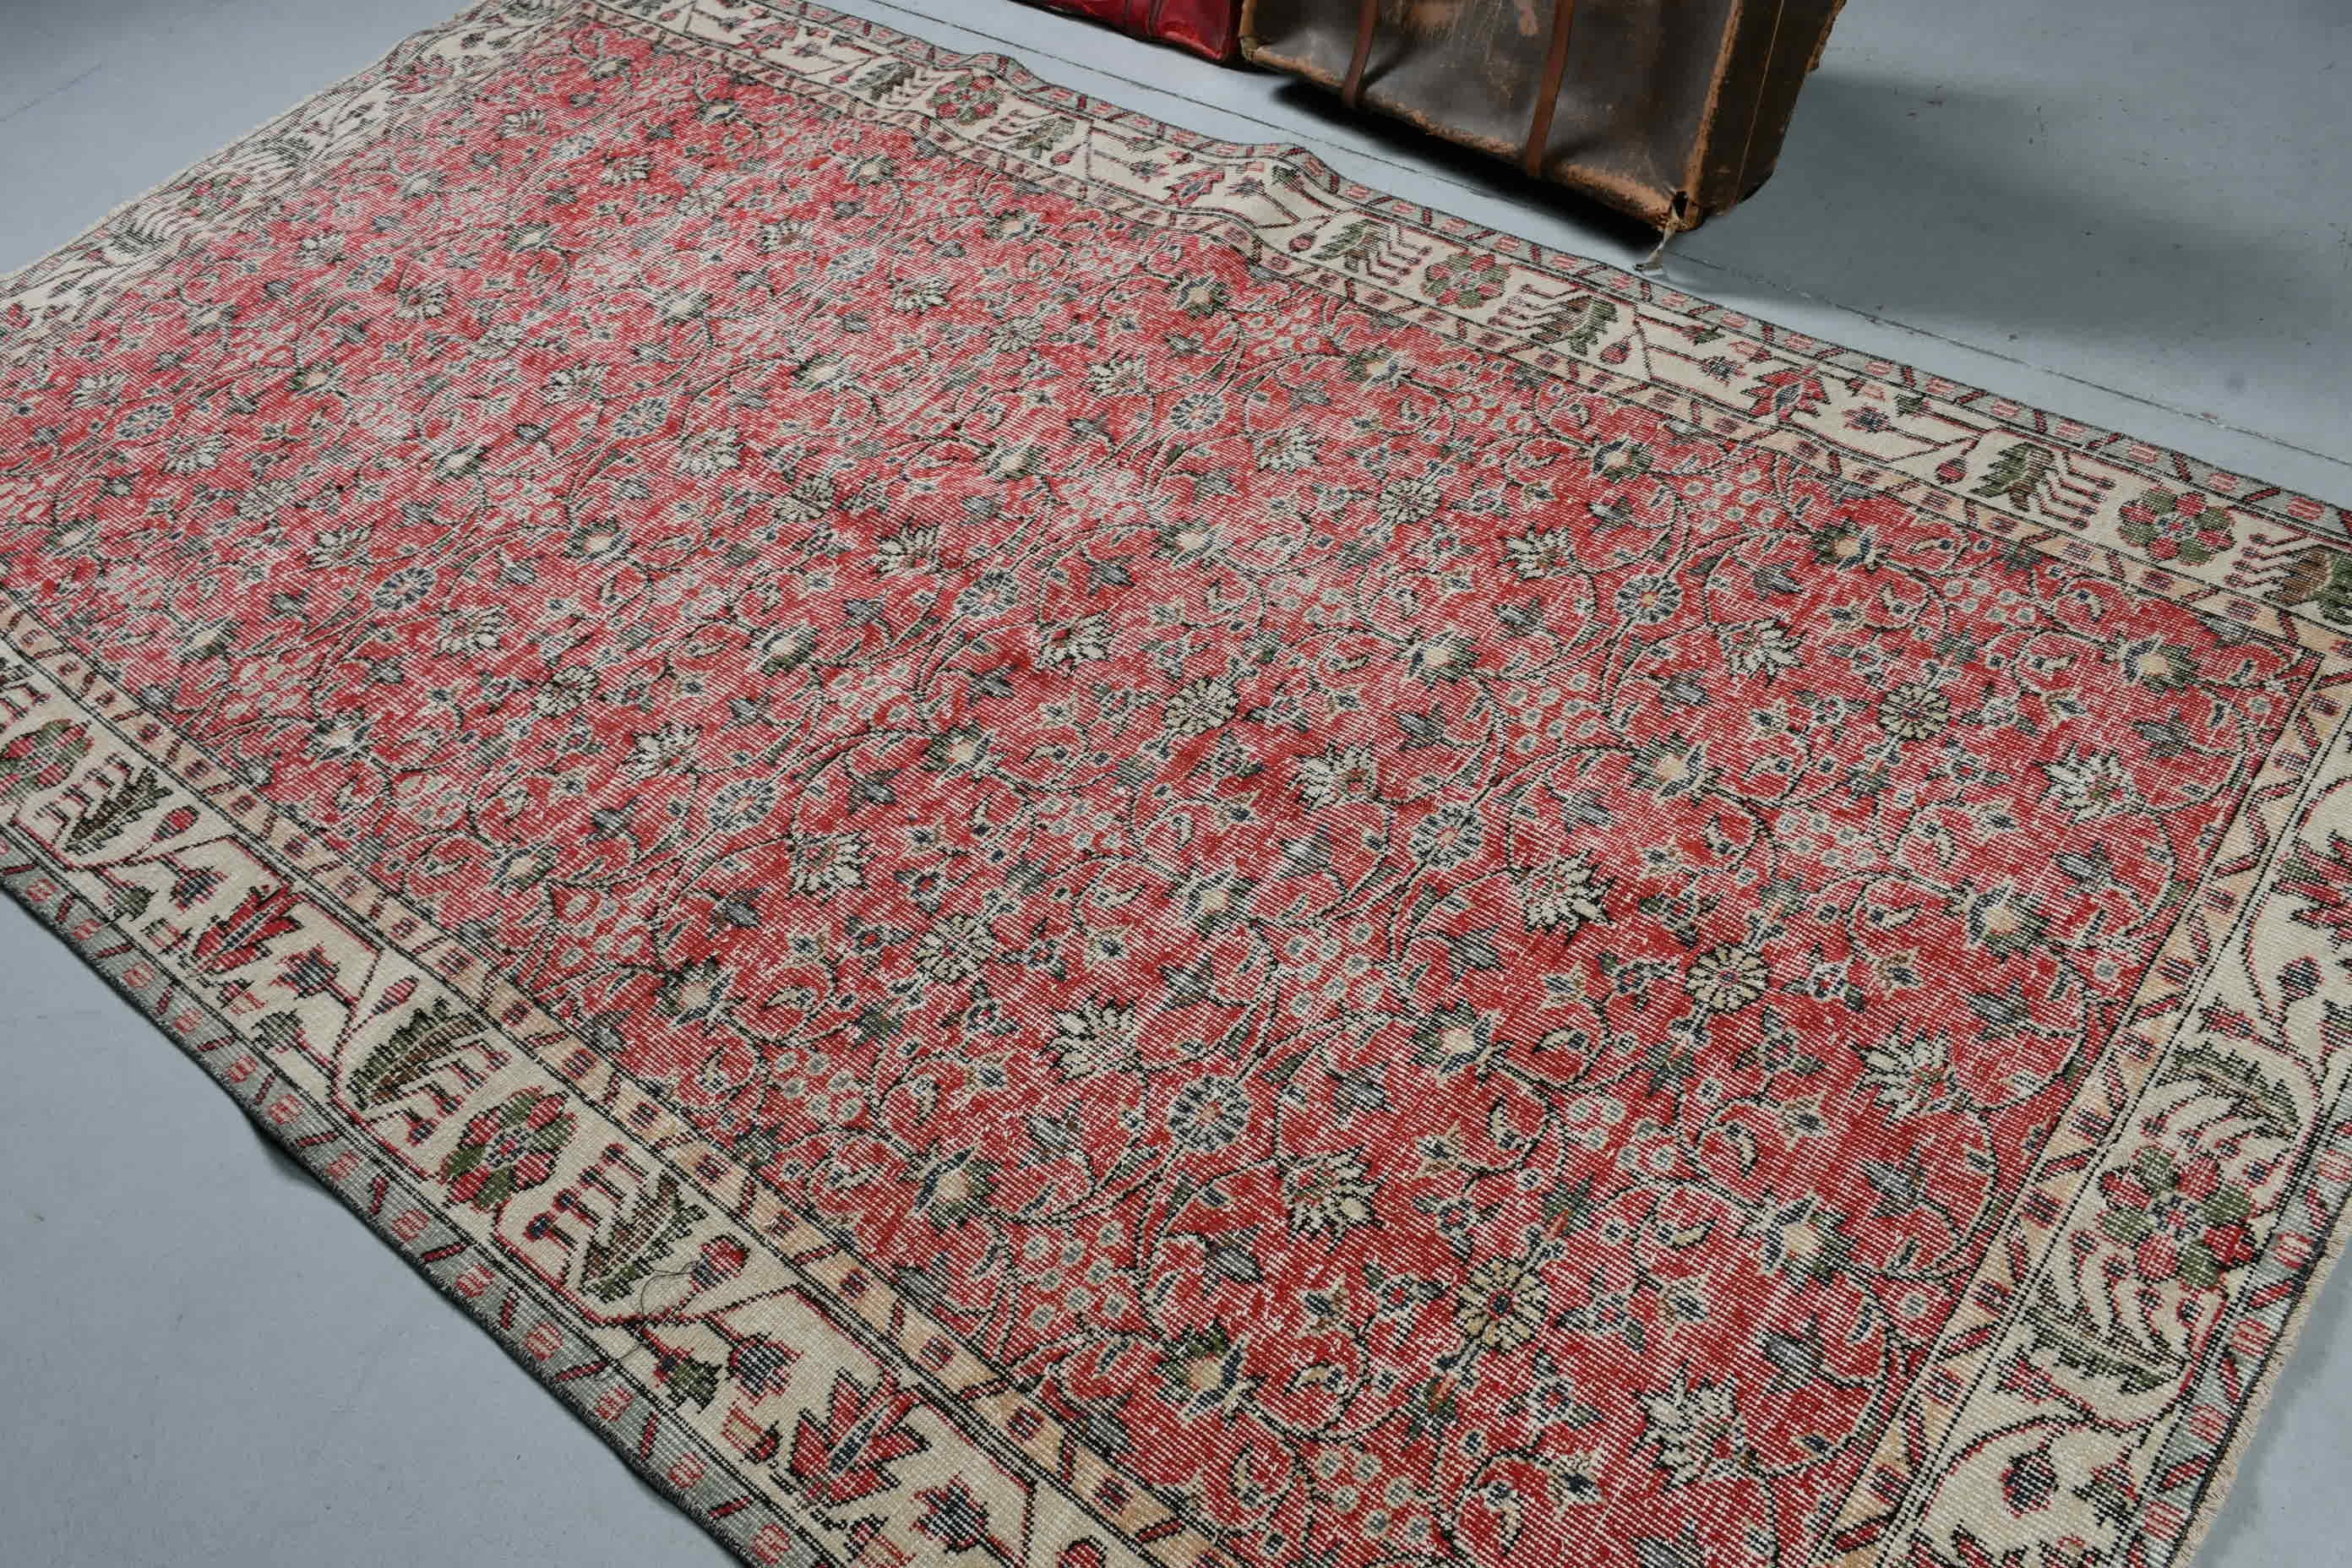 Dining Room Rug, Custom Rug, Turkish Rug, 5.2x9.3 ft Large Rug, Red Antique Rug, Oriental Rug, Vintage Rug, Living Room Rug